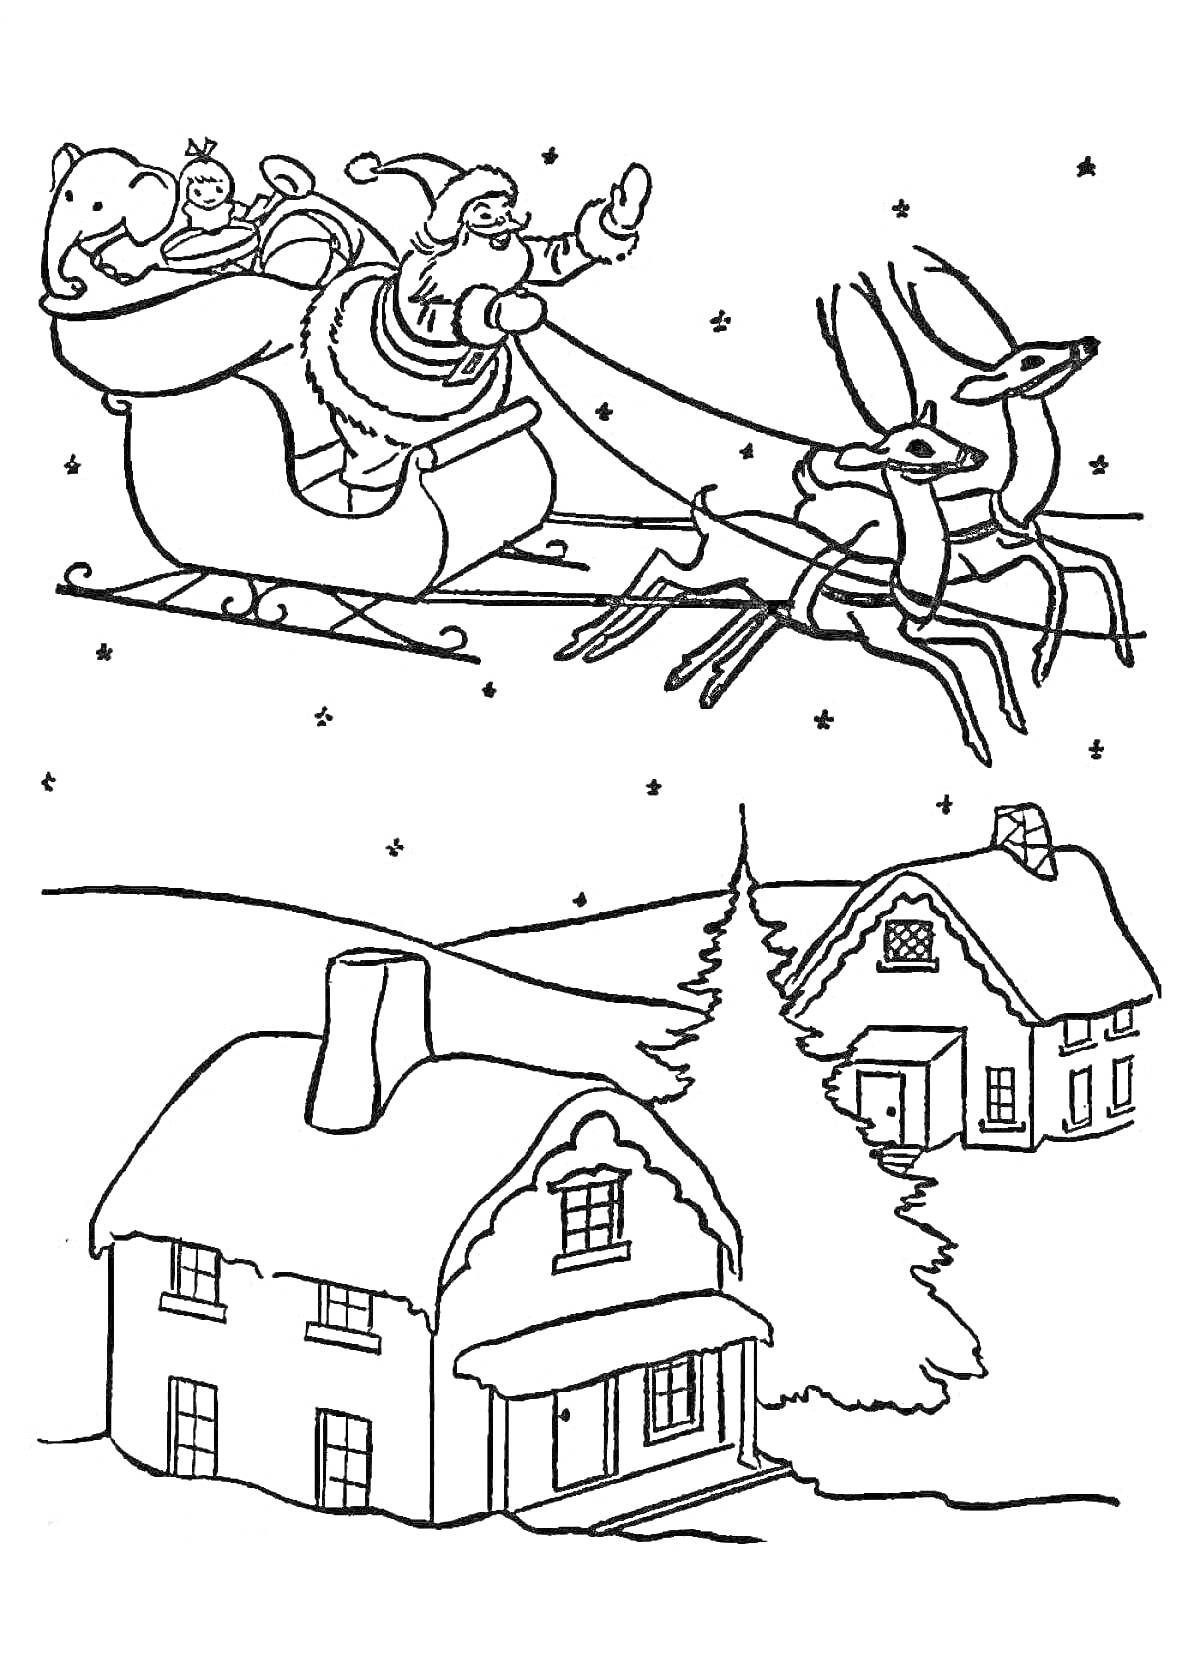 Раскраска Санта-Клаус в санях с оленями над заснеженными домиками